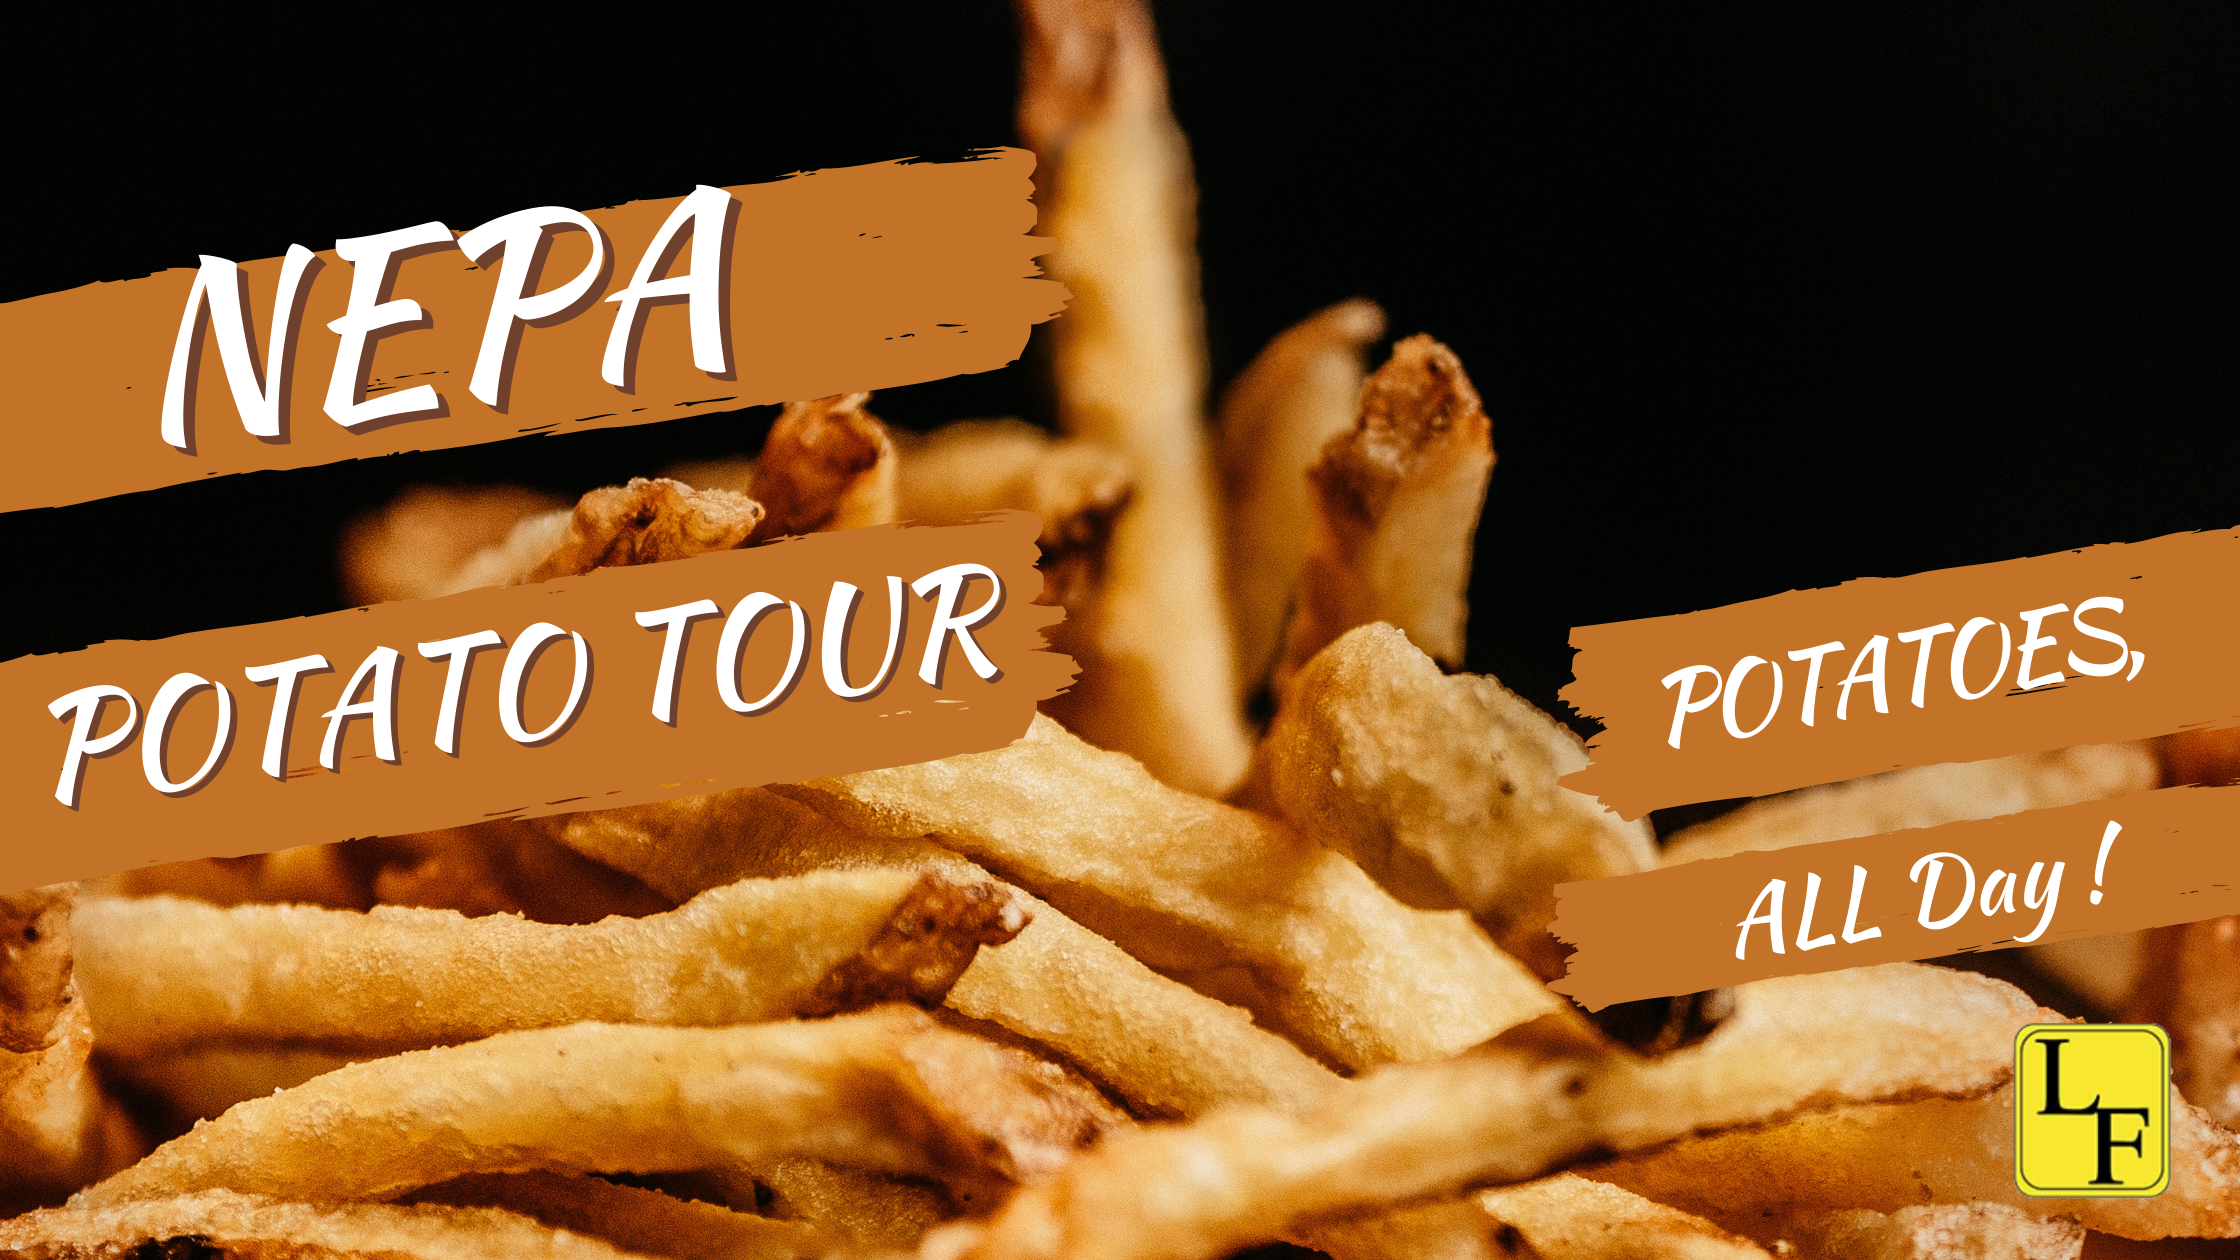 NEPA Potato Tour